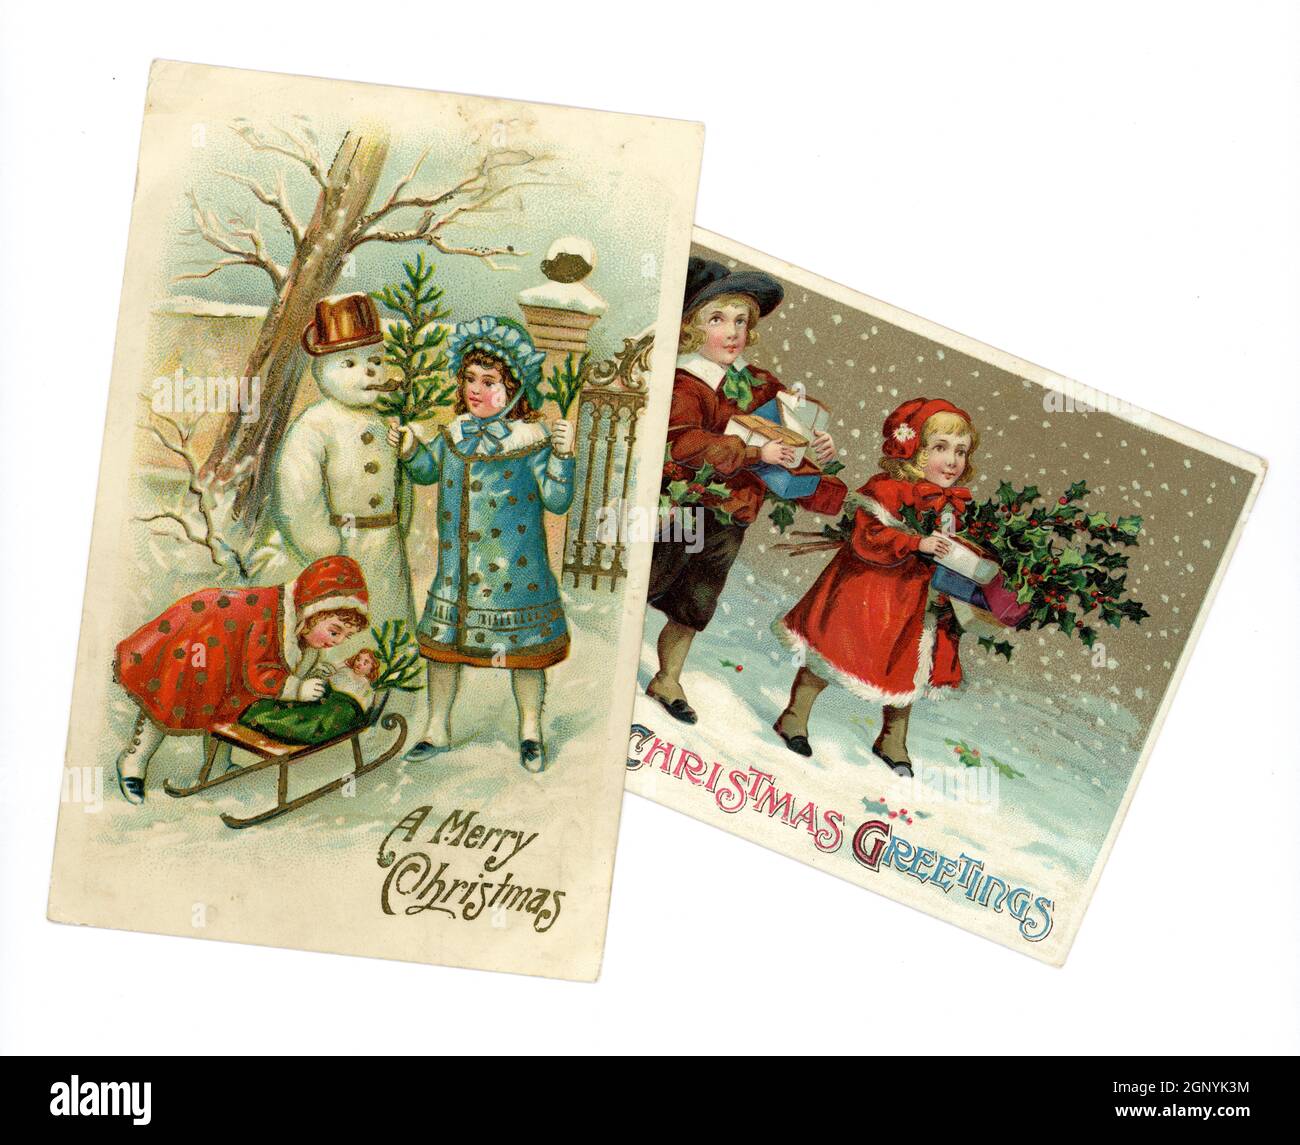 Original relieve Edwardian época tarjetas postales de felicitación de Navidad impresos en Alemania, de niños pequeños lindo con ropa de invierno de moda en este momento, la construcción de un muñeco de nieve y llevar regalos, alrededor de 1910, Reino Unido Foto de stock